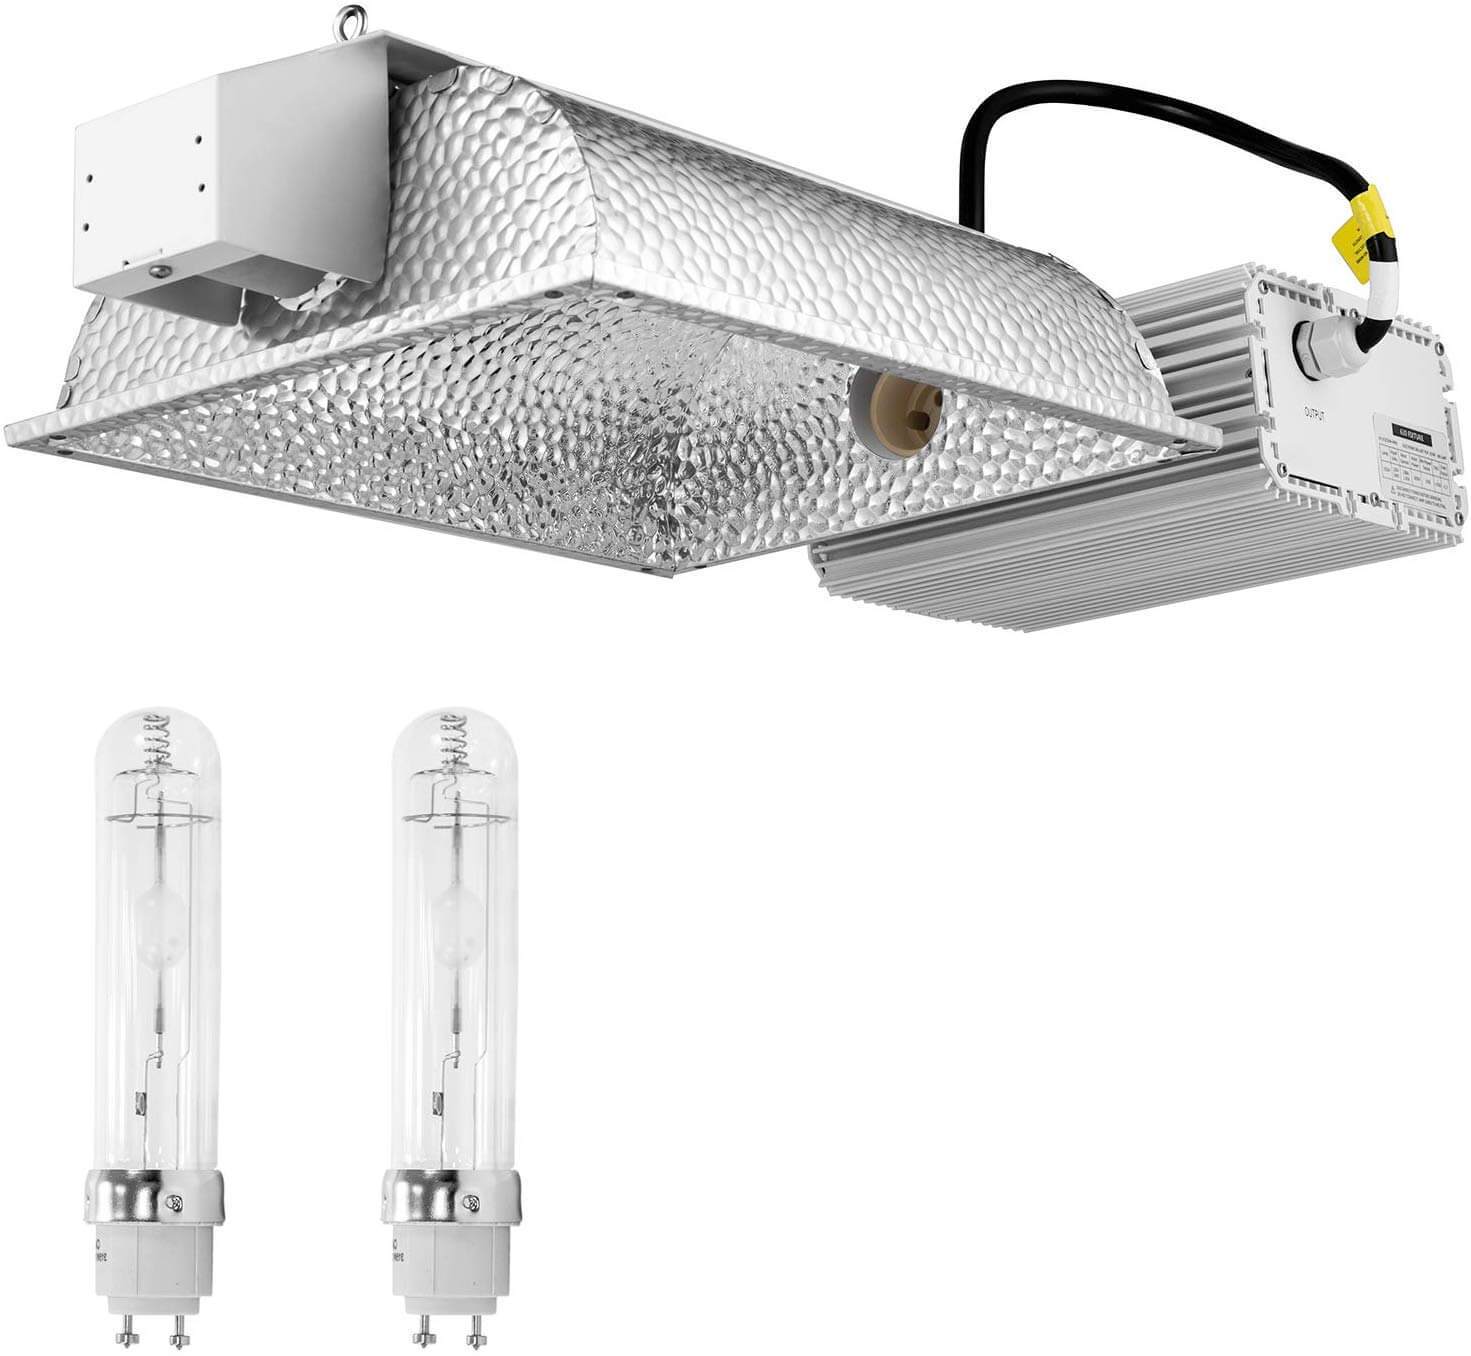 SunStream 630W Double Bulb CMH Grow Light System Include Bulb